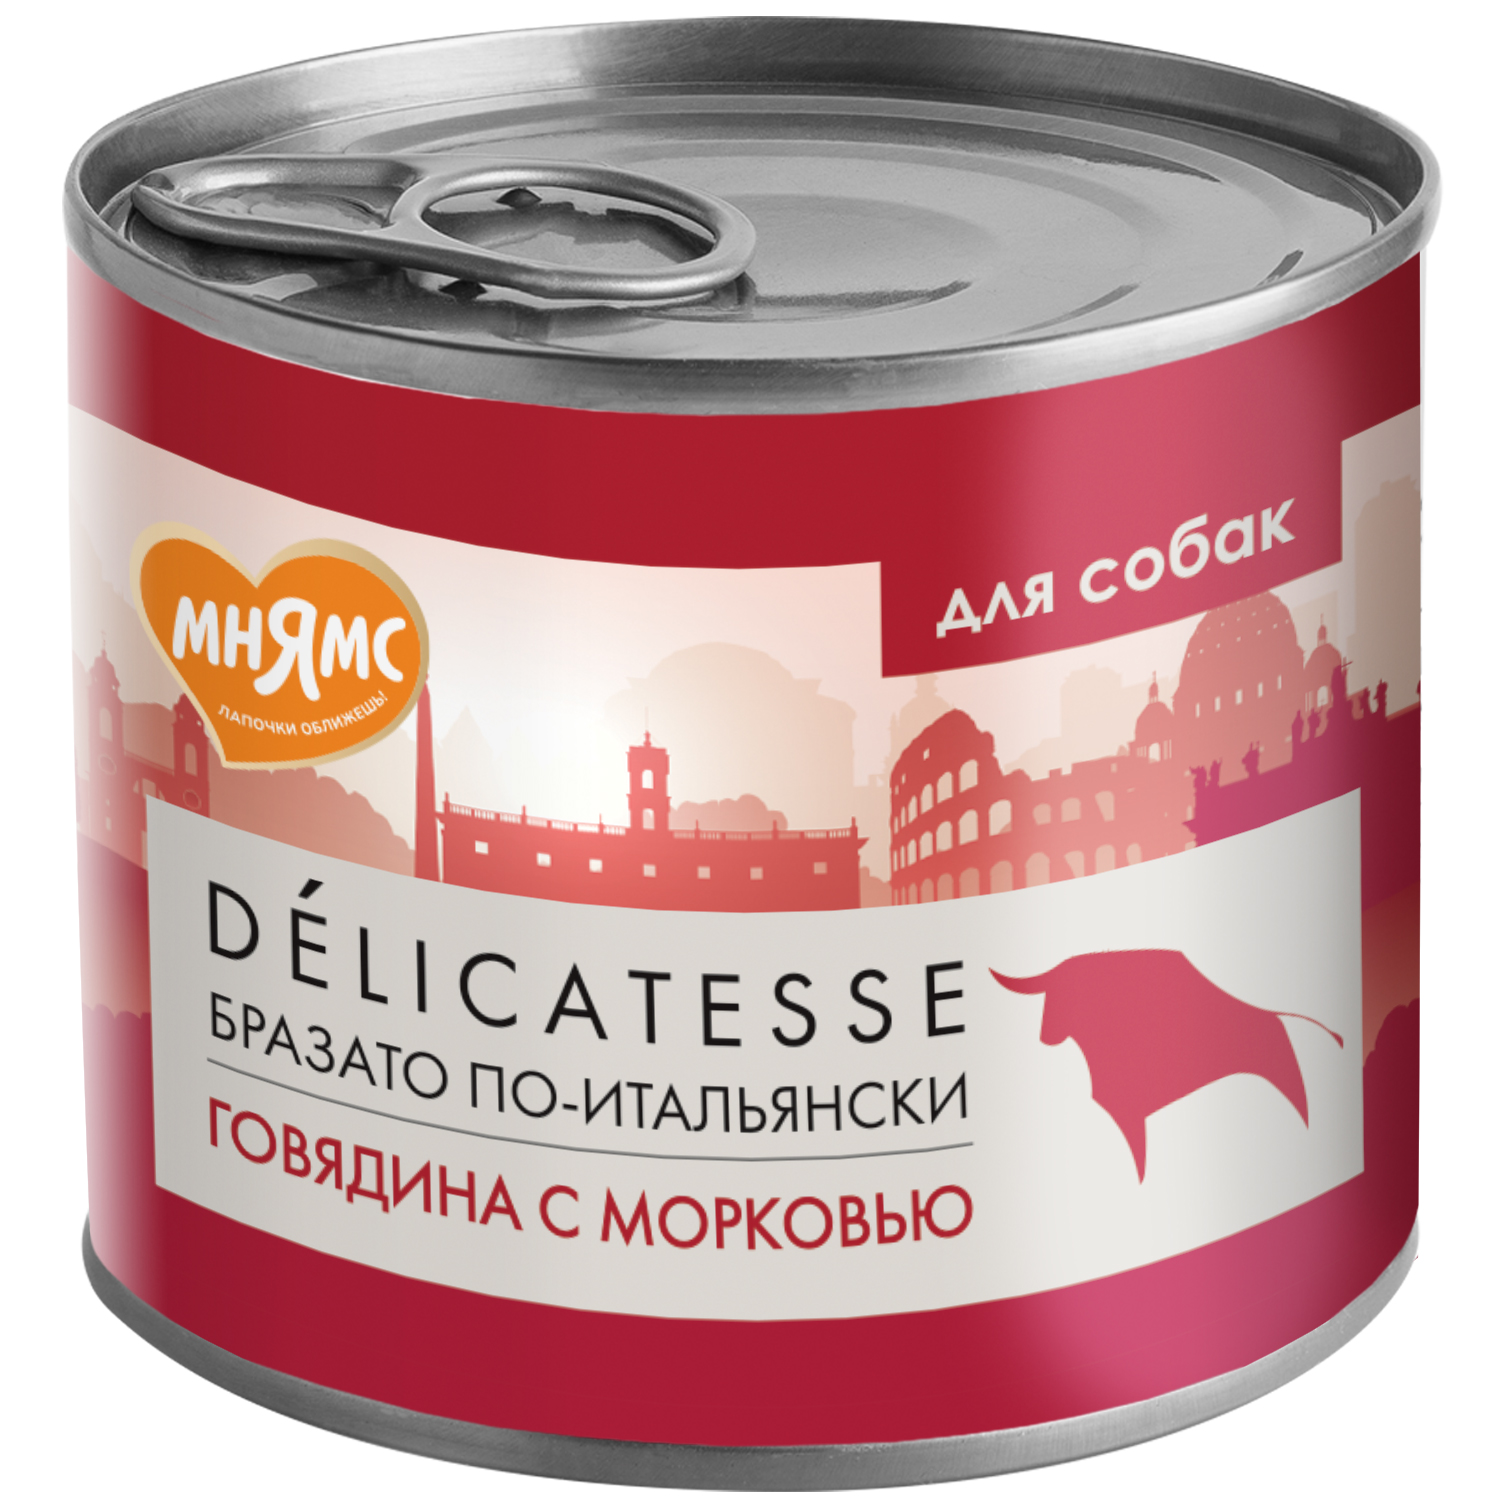 Влажный корм Мнямс Паштет из говядины с морковью для собак всех пород "Бразато по-итальянски" 200 г NEW